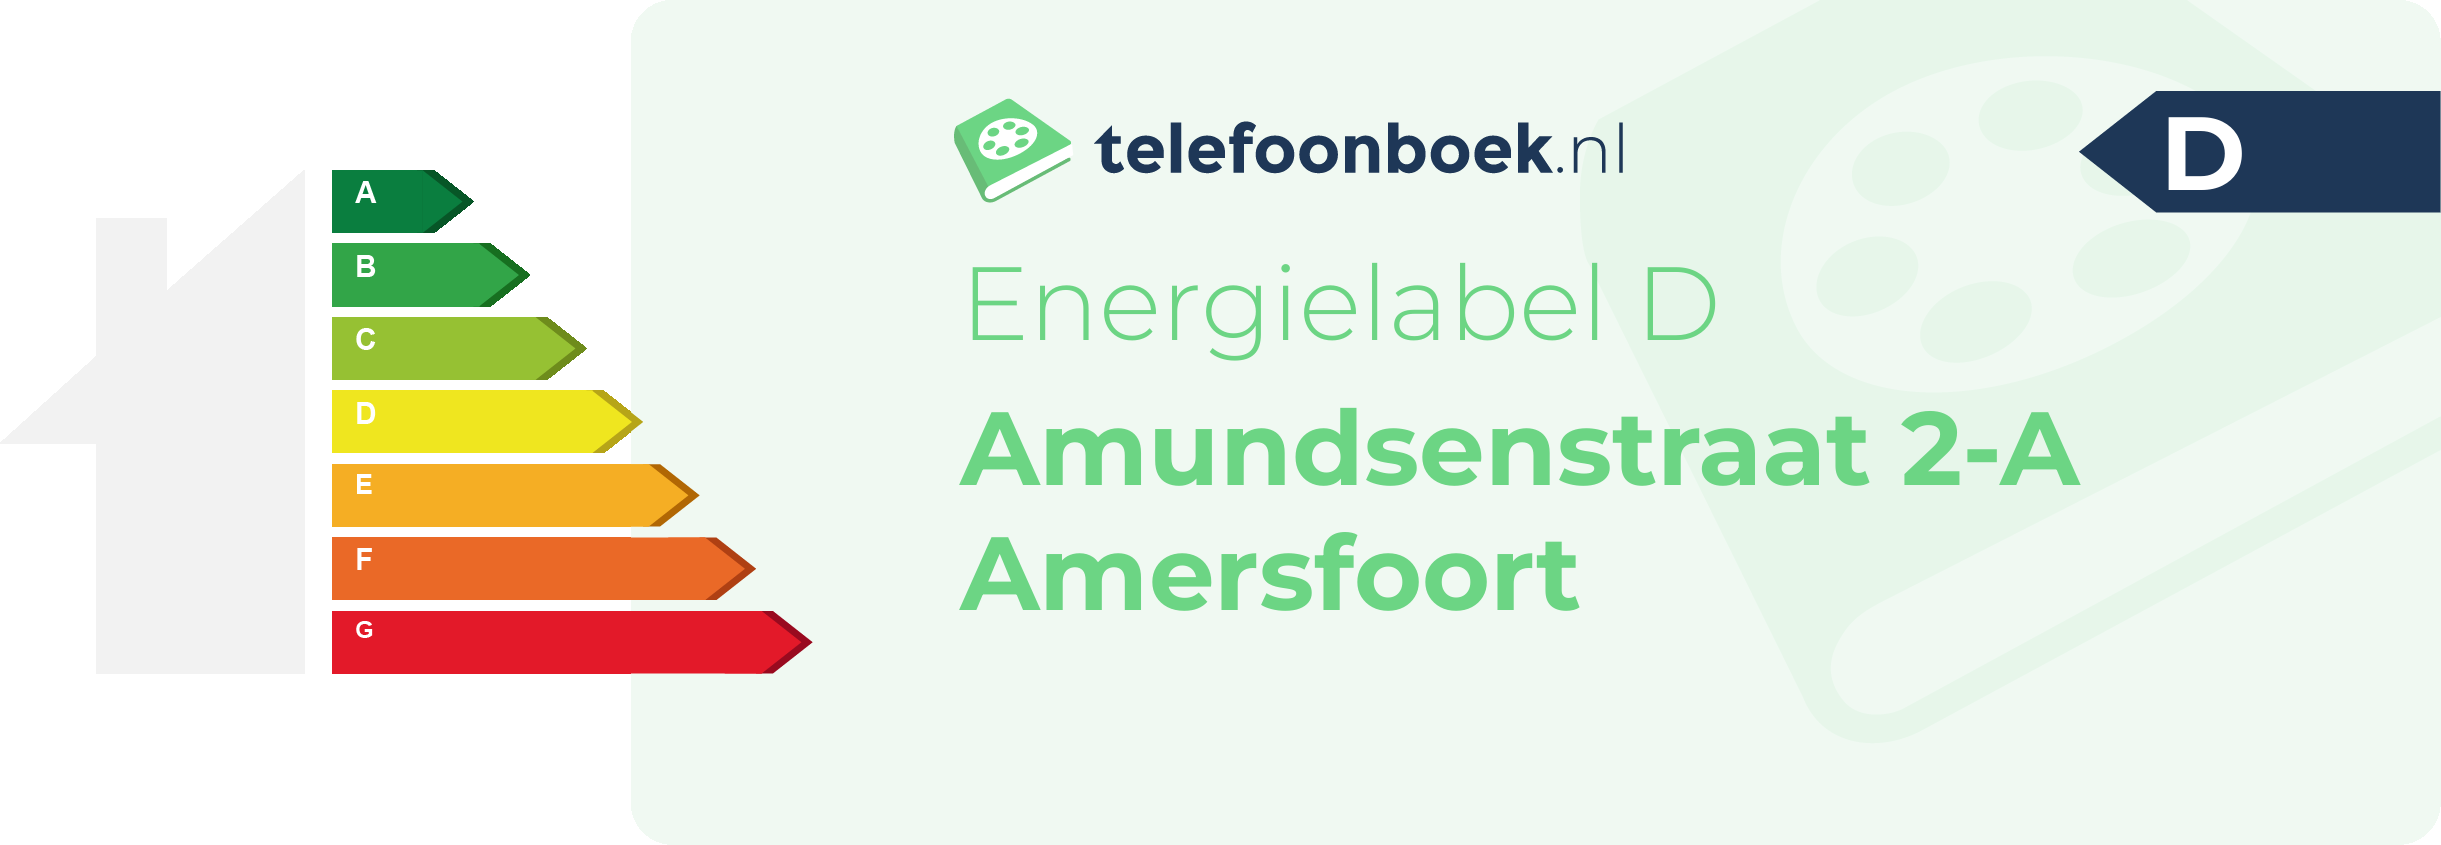 Energielabel Amundsenstraat 2-A Amersfoort